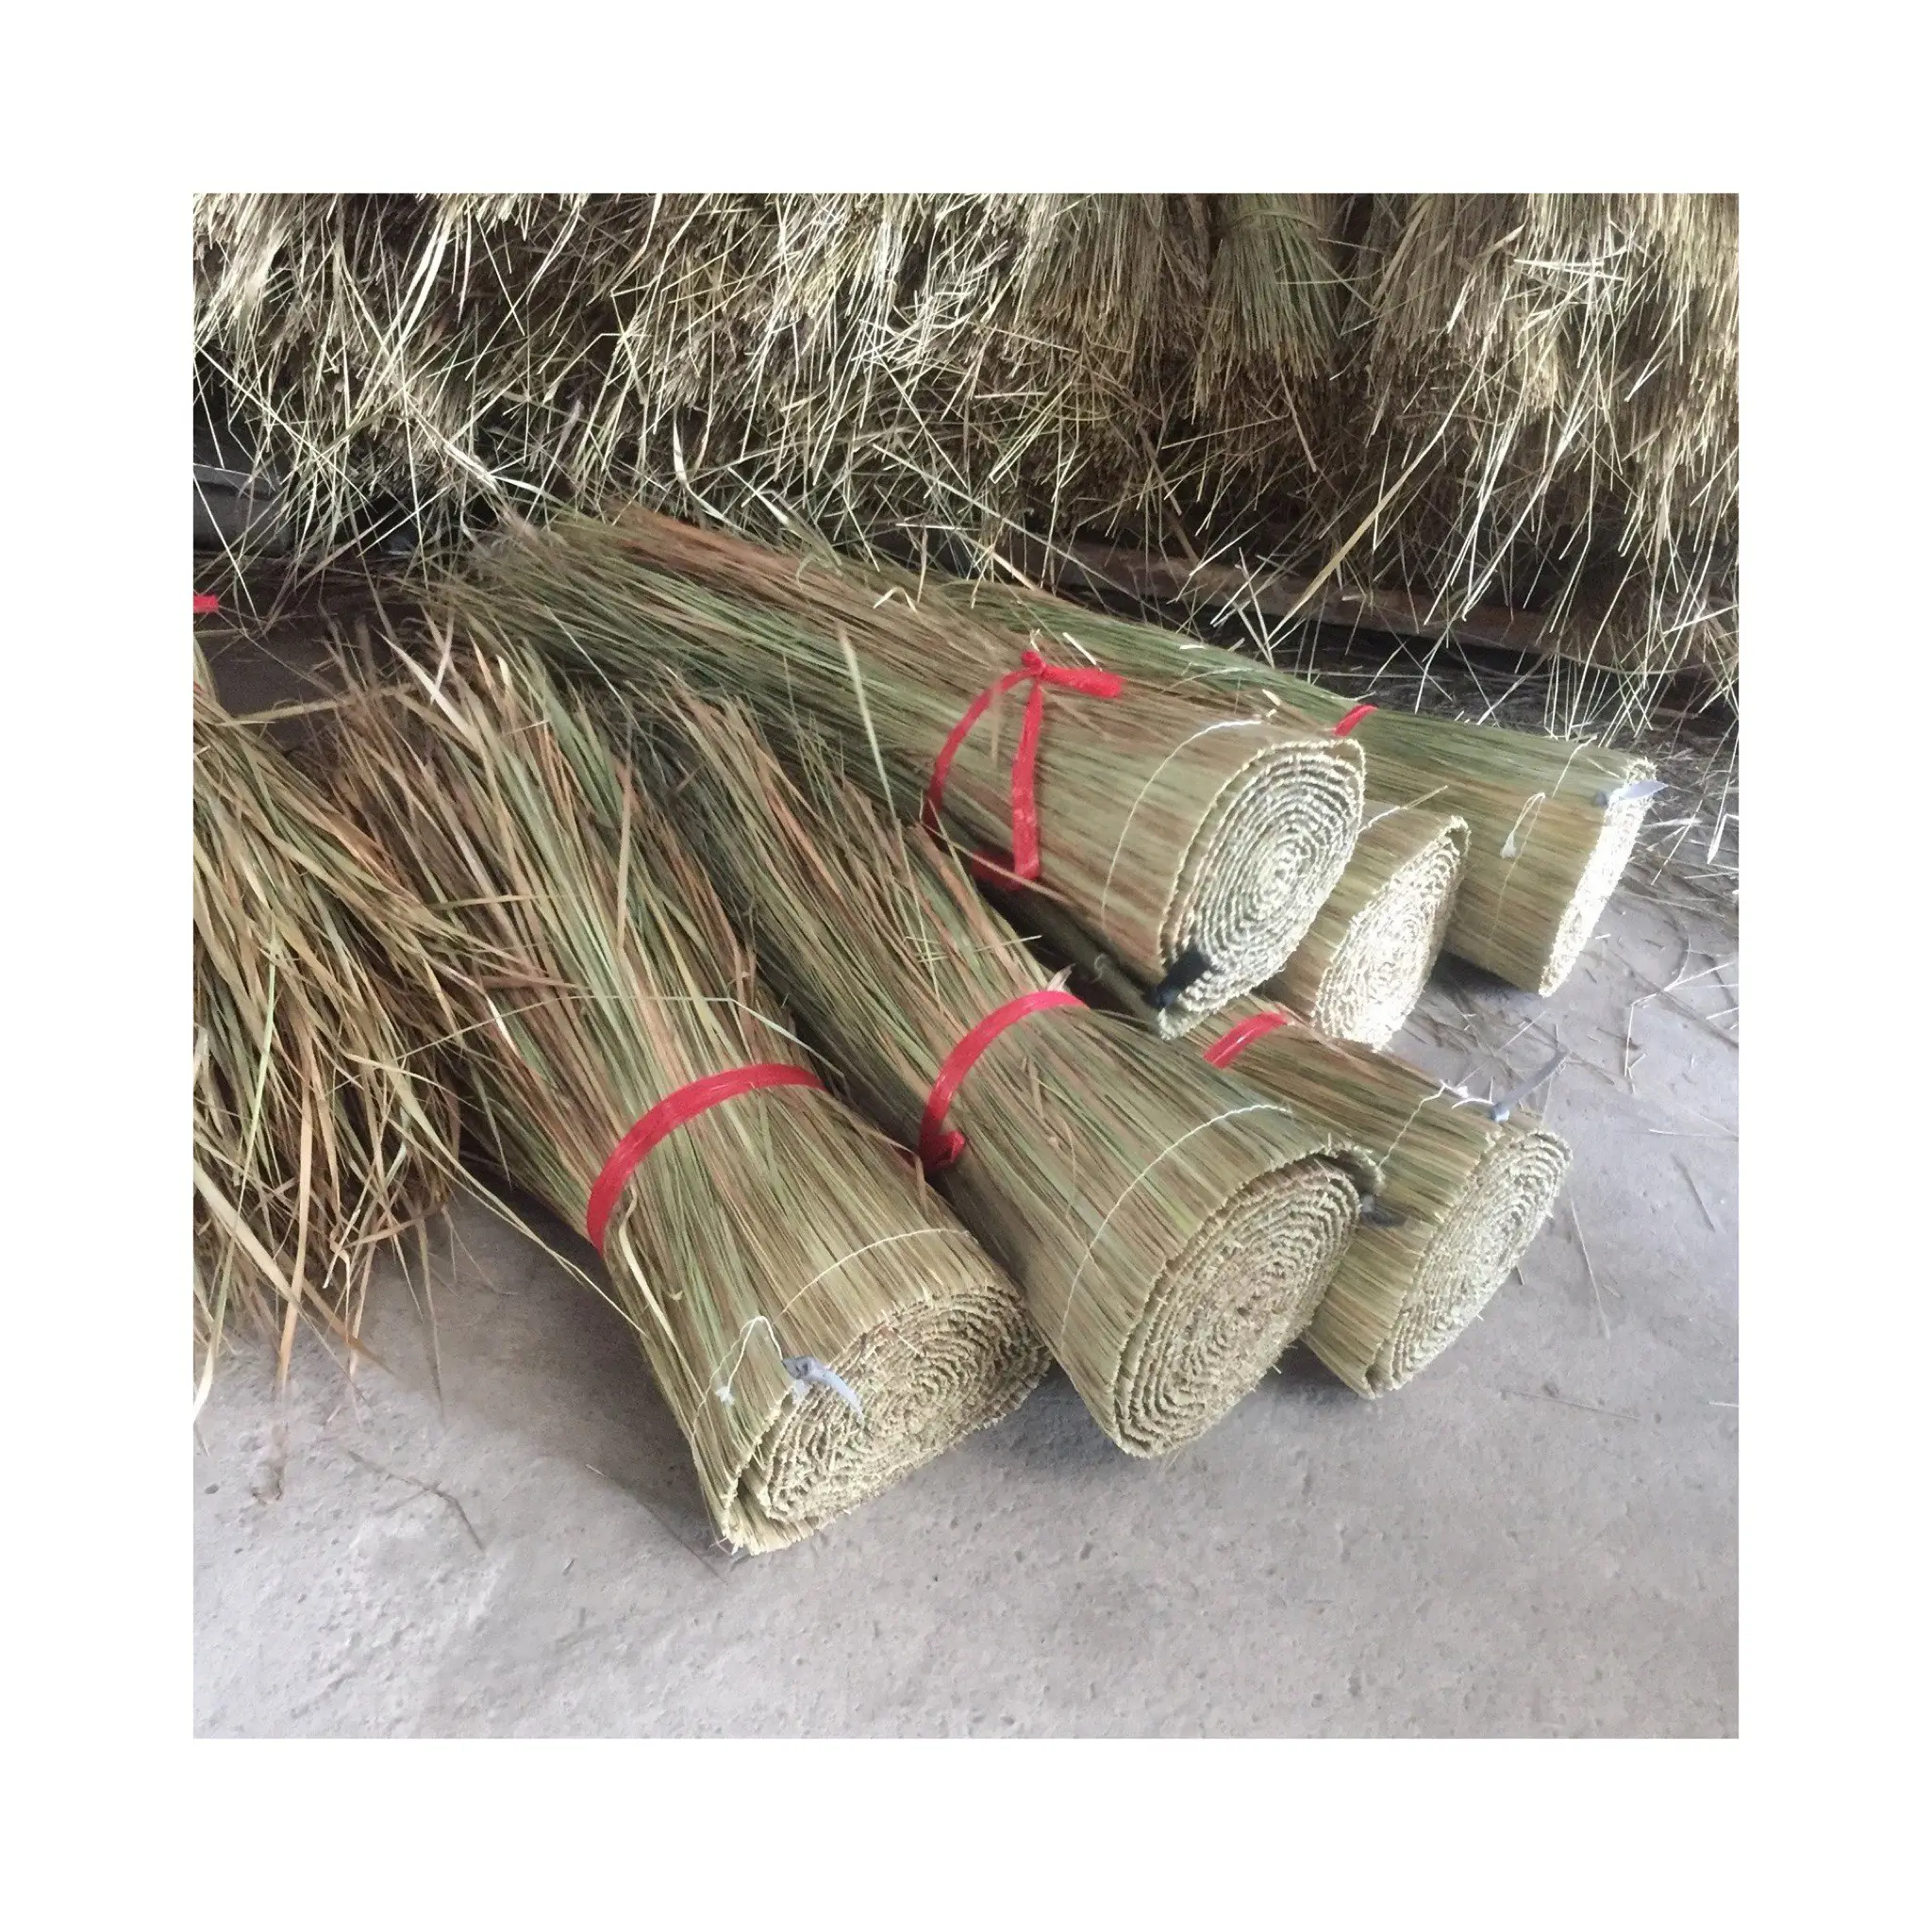 Wholesale grama palha telhado palha palha palha palha rolos palmeira natural deixa telhado para as exportações do fornecedor vietnamita 99GD